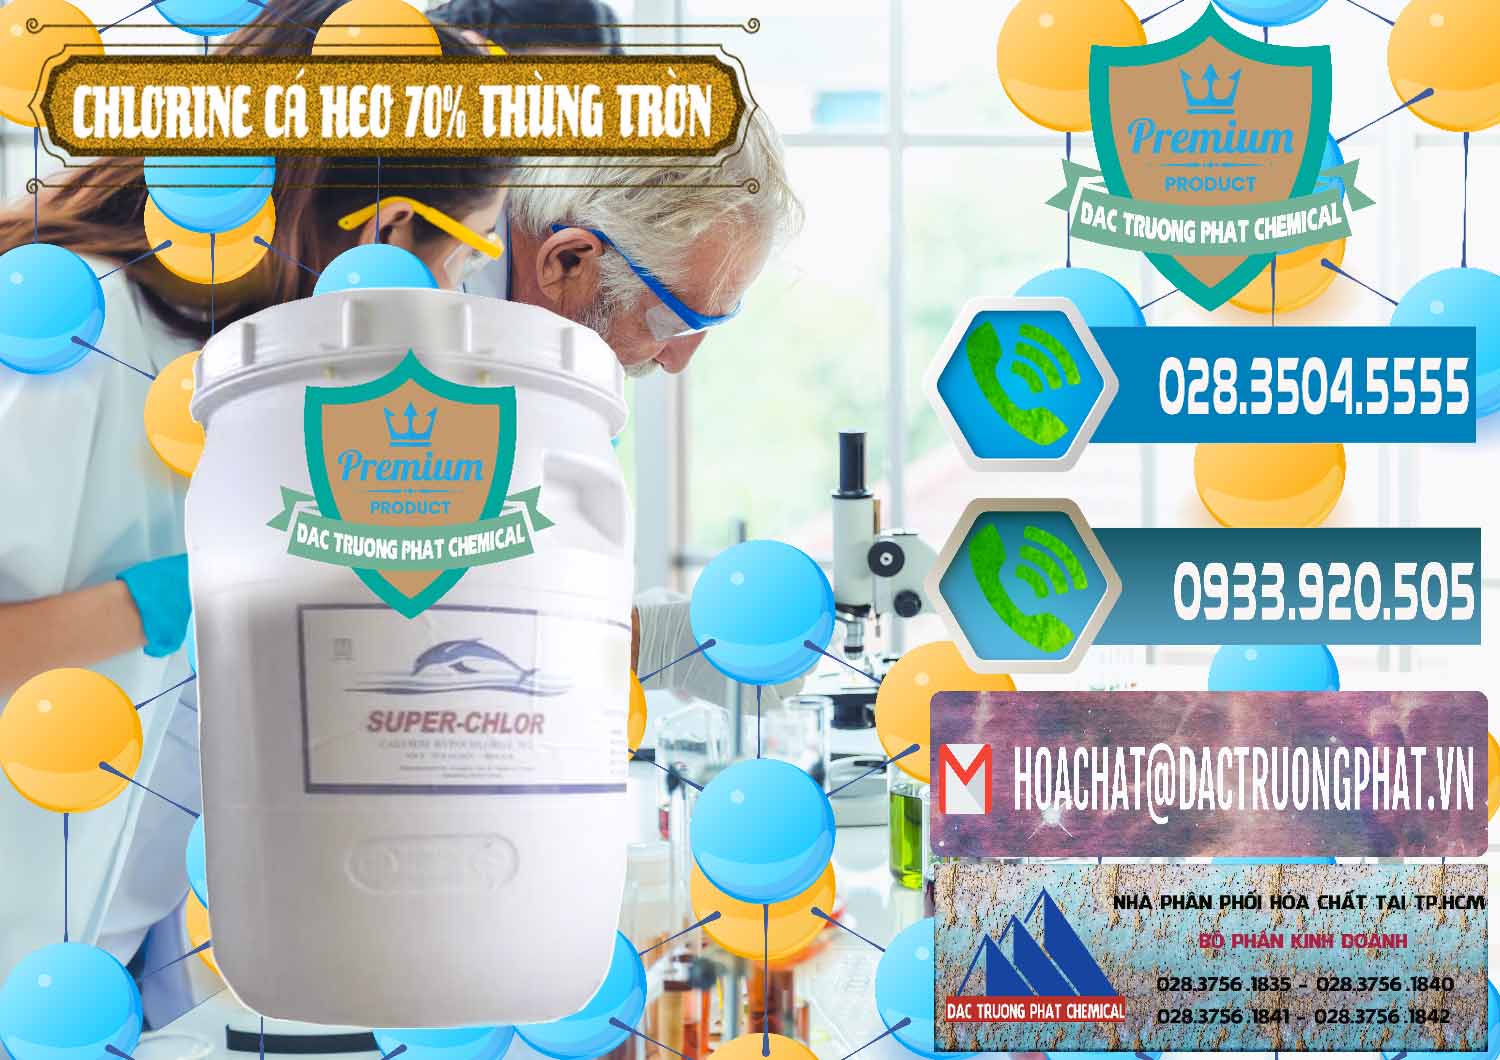 Nơi chuyên bán _ phân phối Clorin - Chlorine Cá Heo 70% Super Chlor Thùng Tròn Nắp Trắng Trung Quốc China - 0239 - Công ty cung cấp _ kinh doanh hóa chất tại TP.HCM - congtyhoachat.net